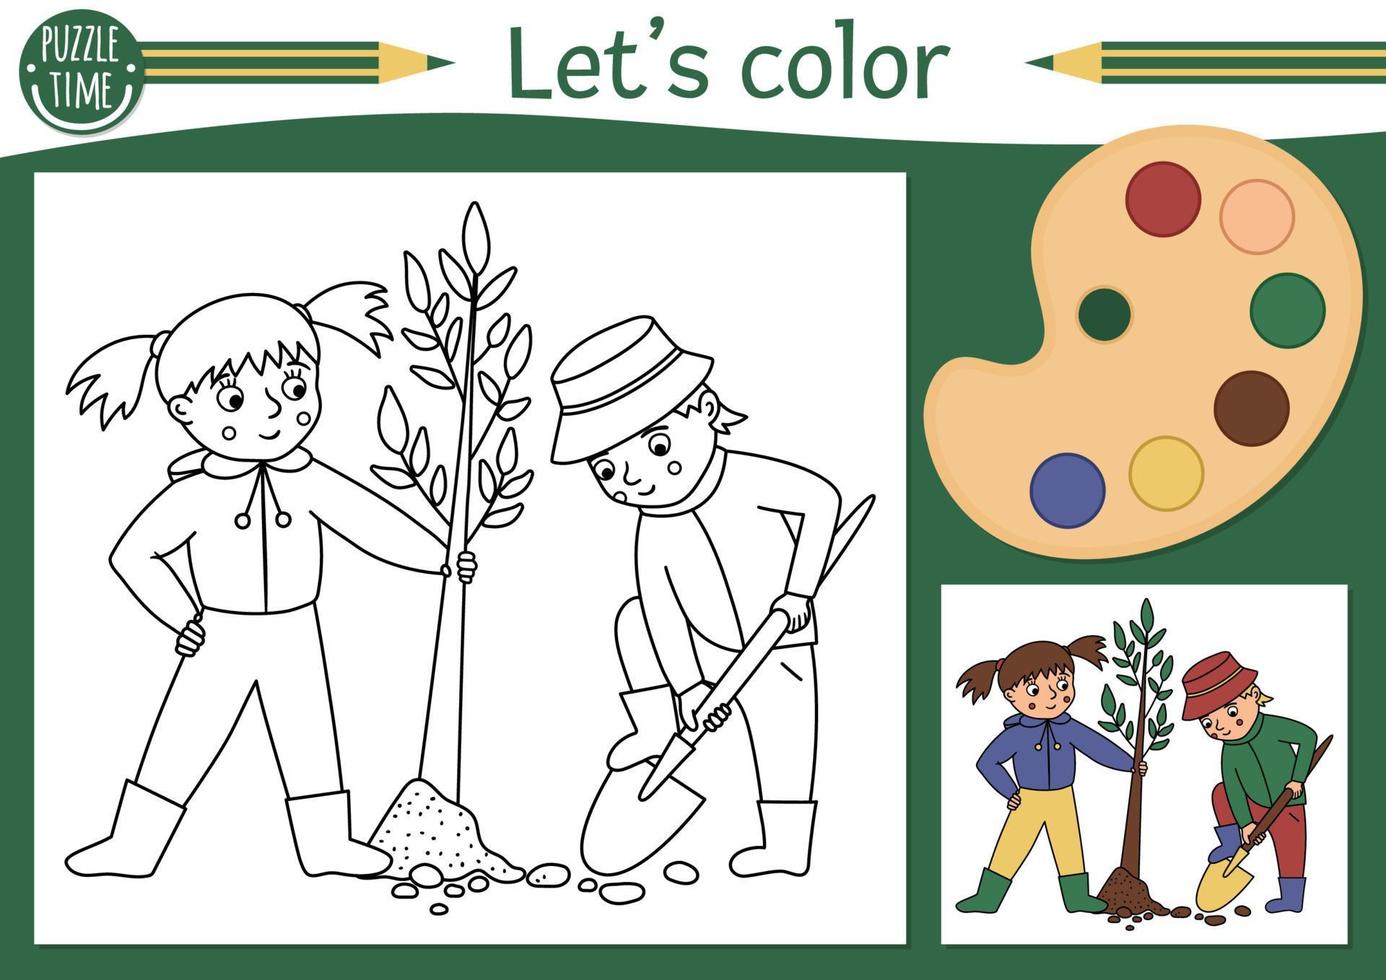 Garten-Malvorlagen für Kinder mit Jungen und Mädchen, die einen Baum pflanzen. Vektor-Frühling-Umriss-Darstellung. entzückendes Naturfarbbuch für Kinder mit farbigem Beispiel. Arbeitsblatt zum Ausdrucken von Zeichenfähigkeiten vektor